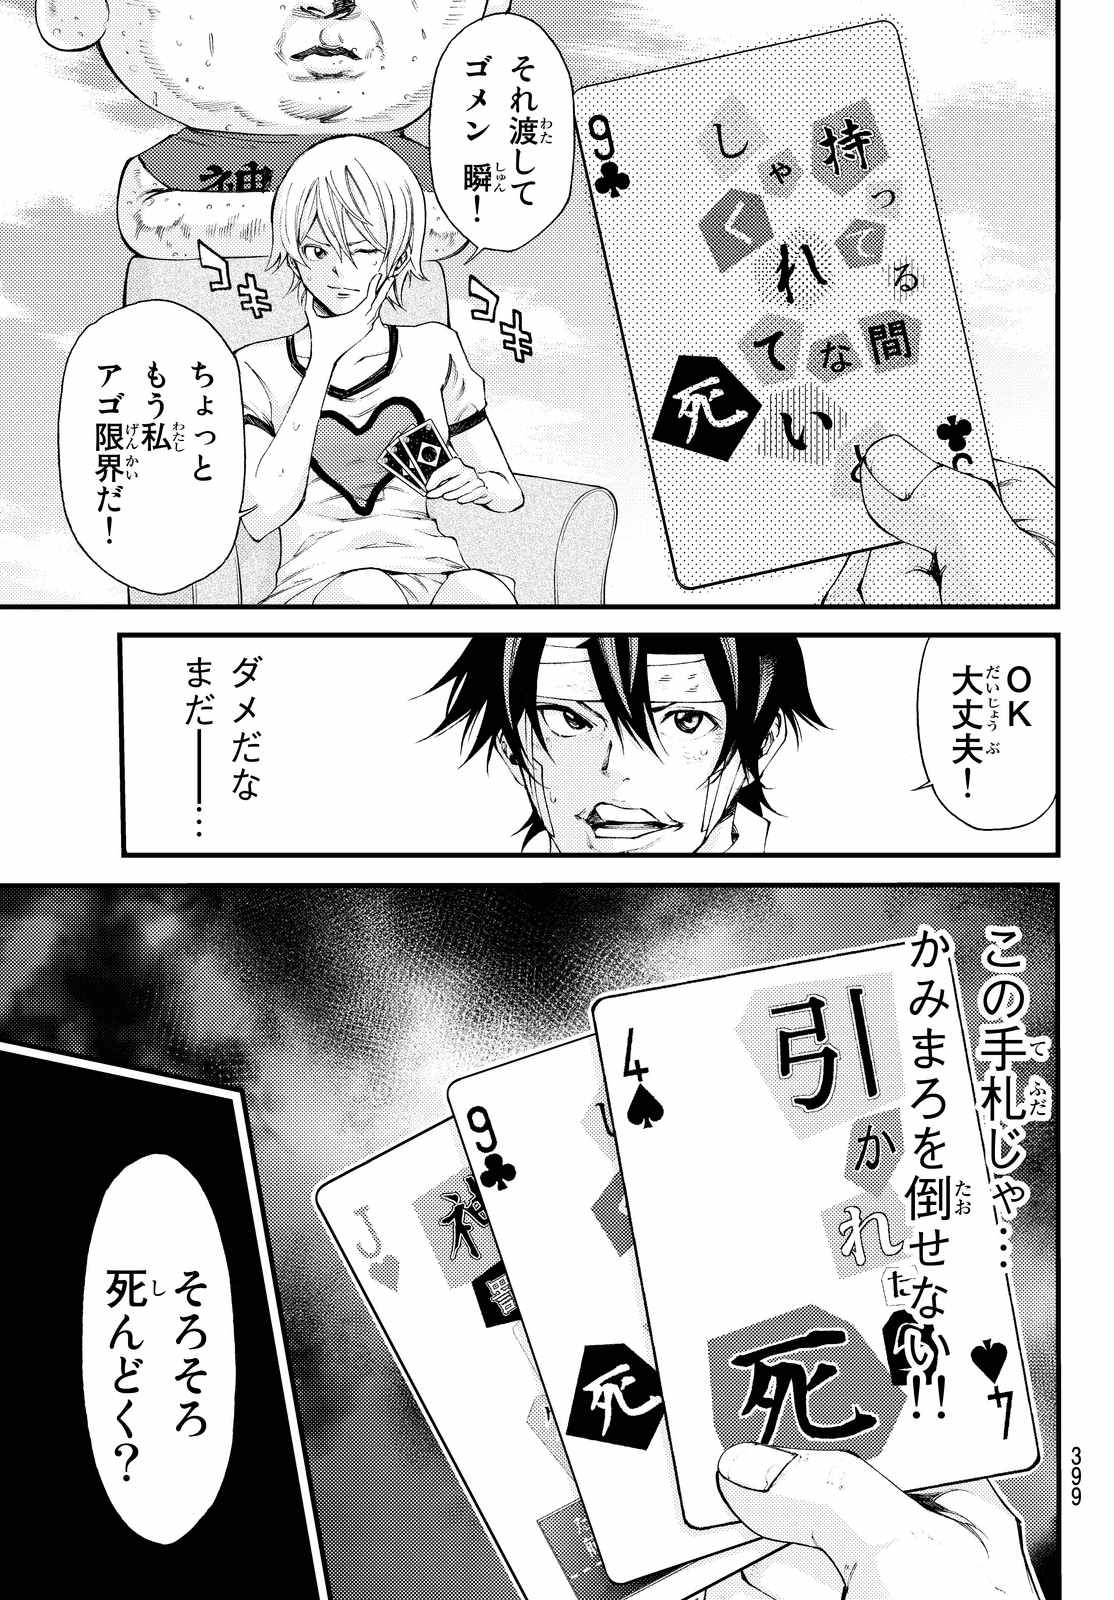 Kamisama no Ituori - Chapter 160 - Page 3